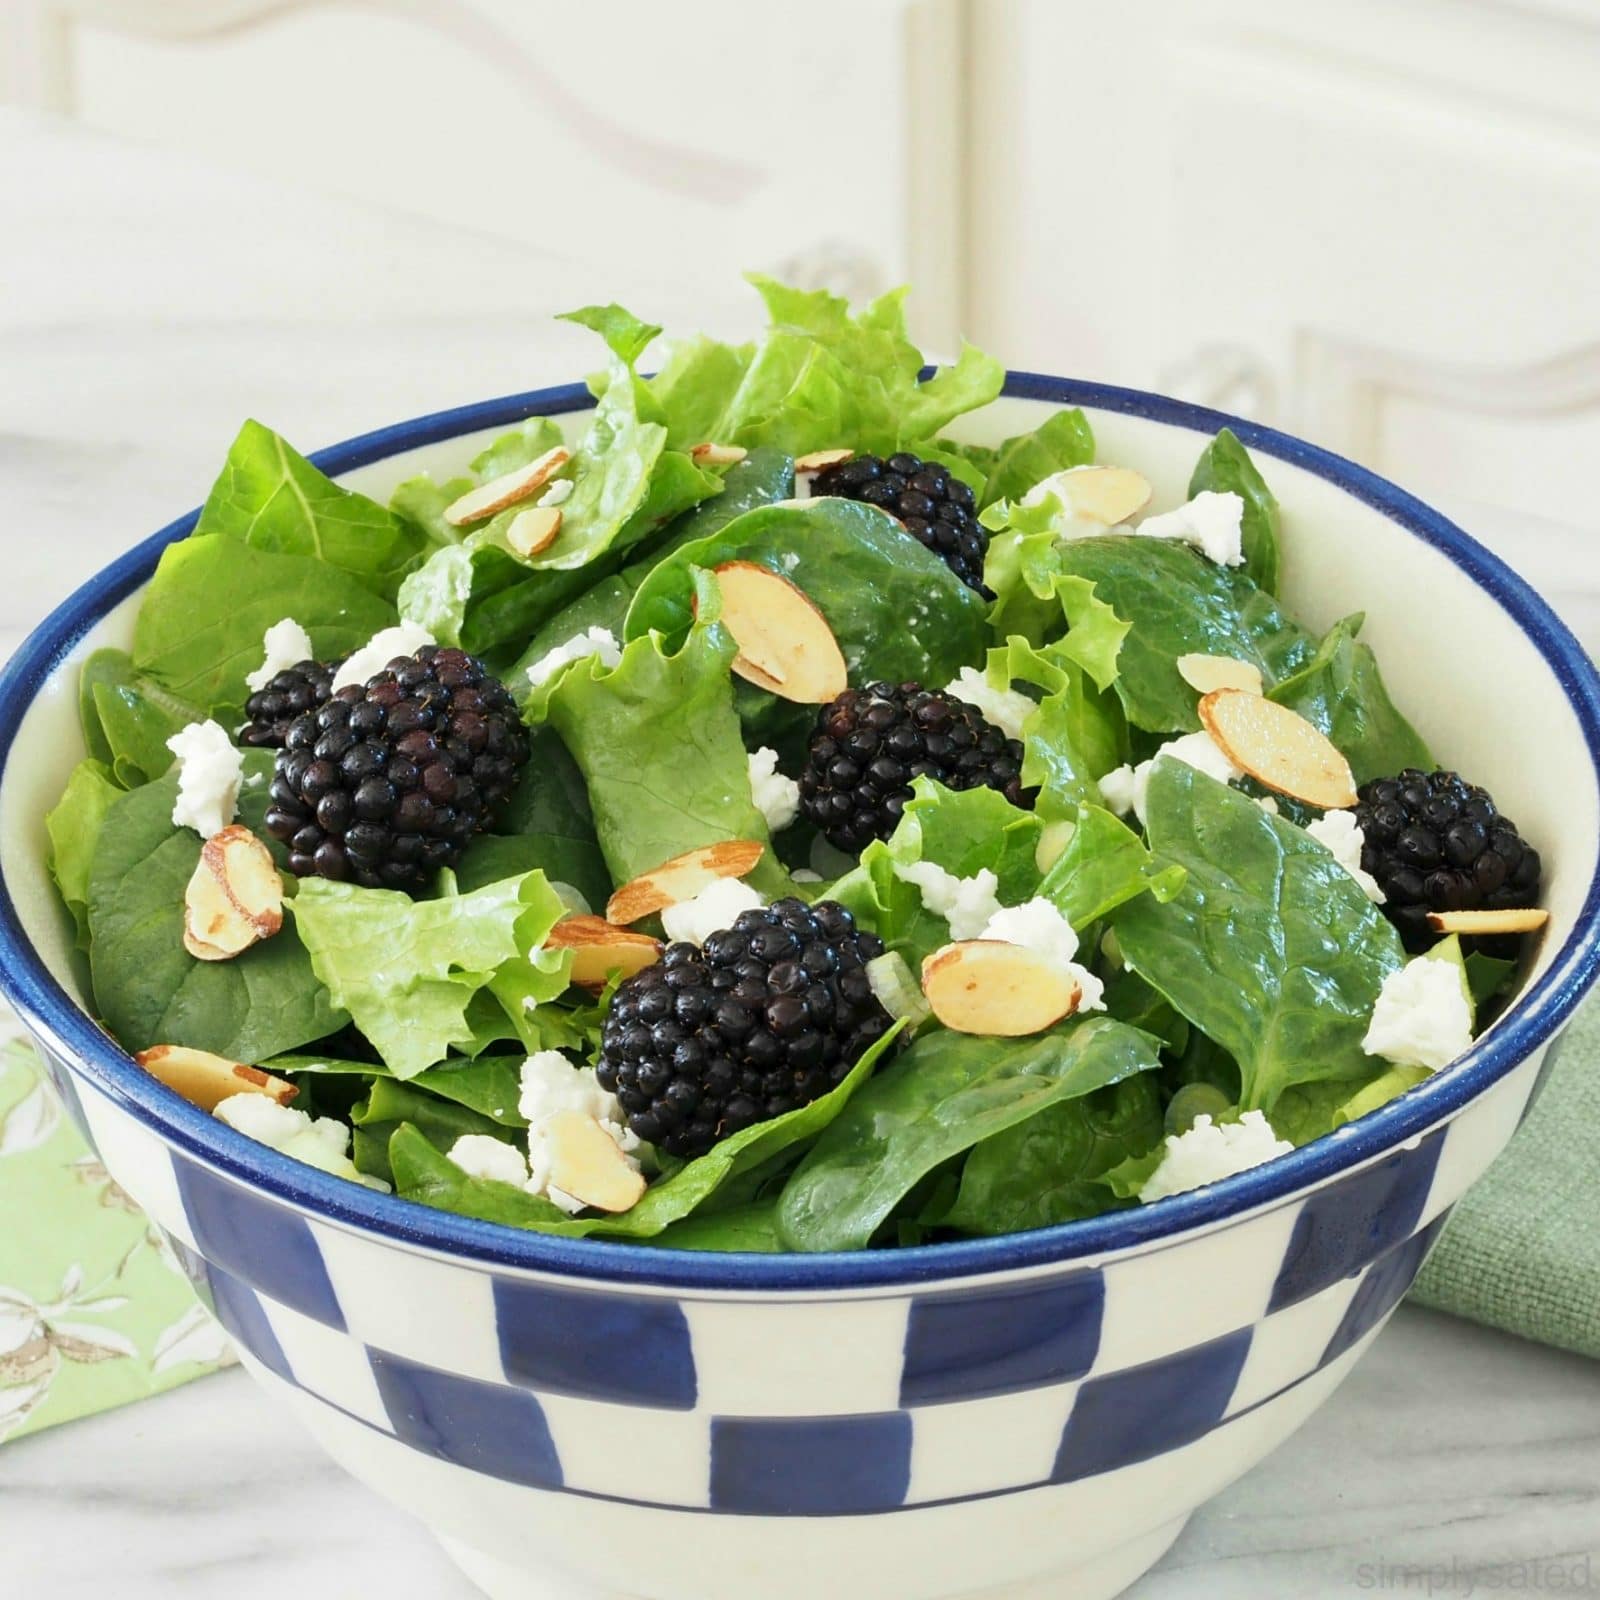 Blackberries & Greens Salad - a fantastic, healthy salad with blackberries, greens & almonds. www.simplysated.com